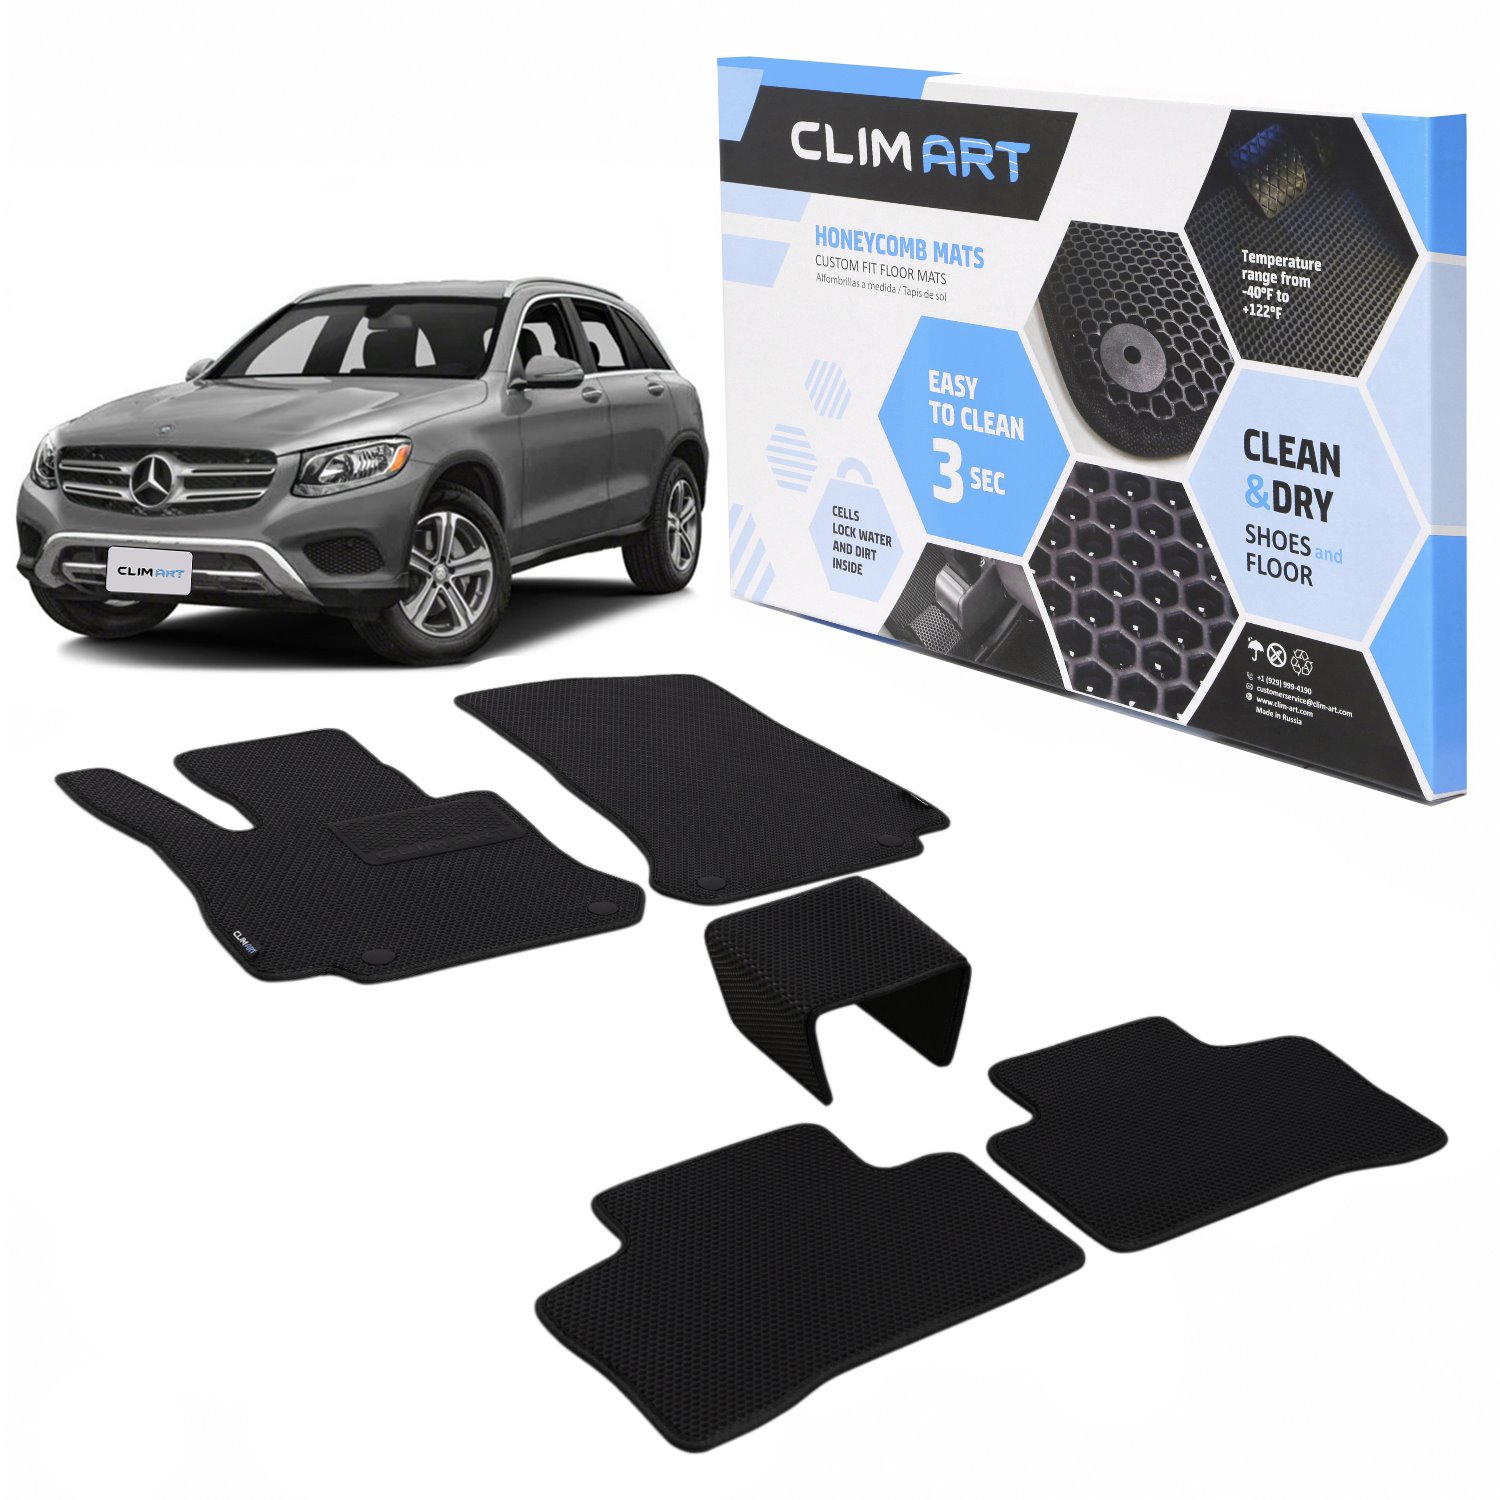 CLIM ART Honeycomb Custom Fit Floor Mats Fits Select Mercedes GLC-Class